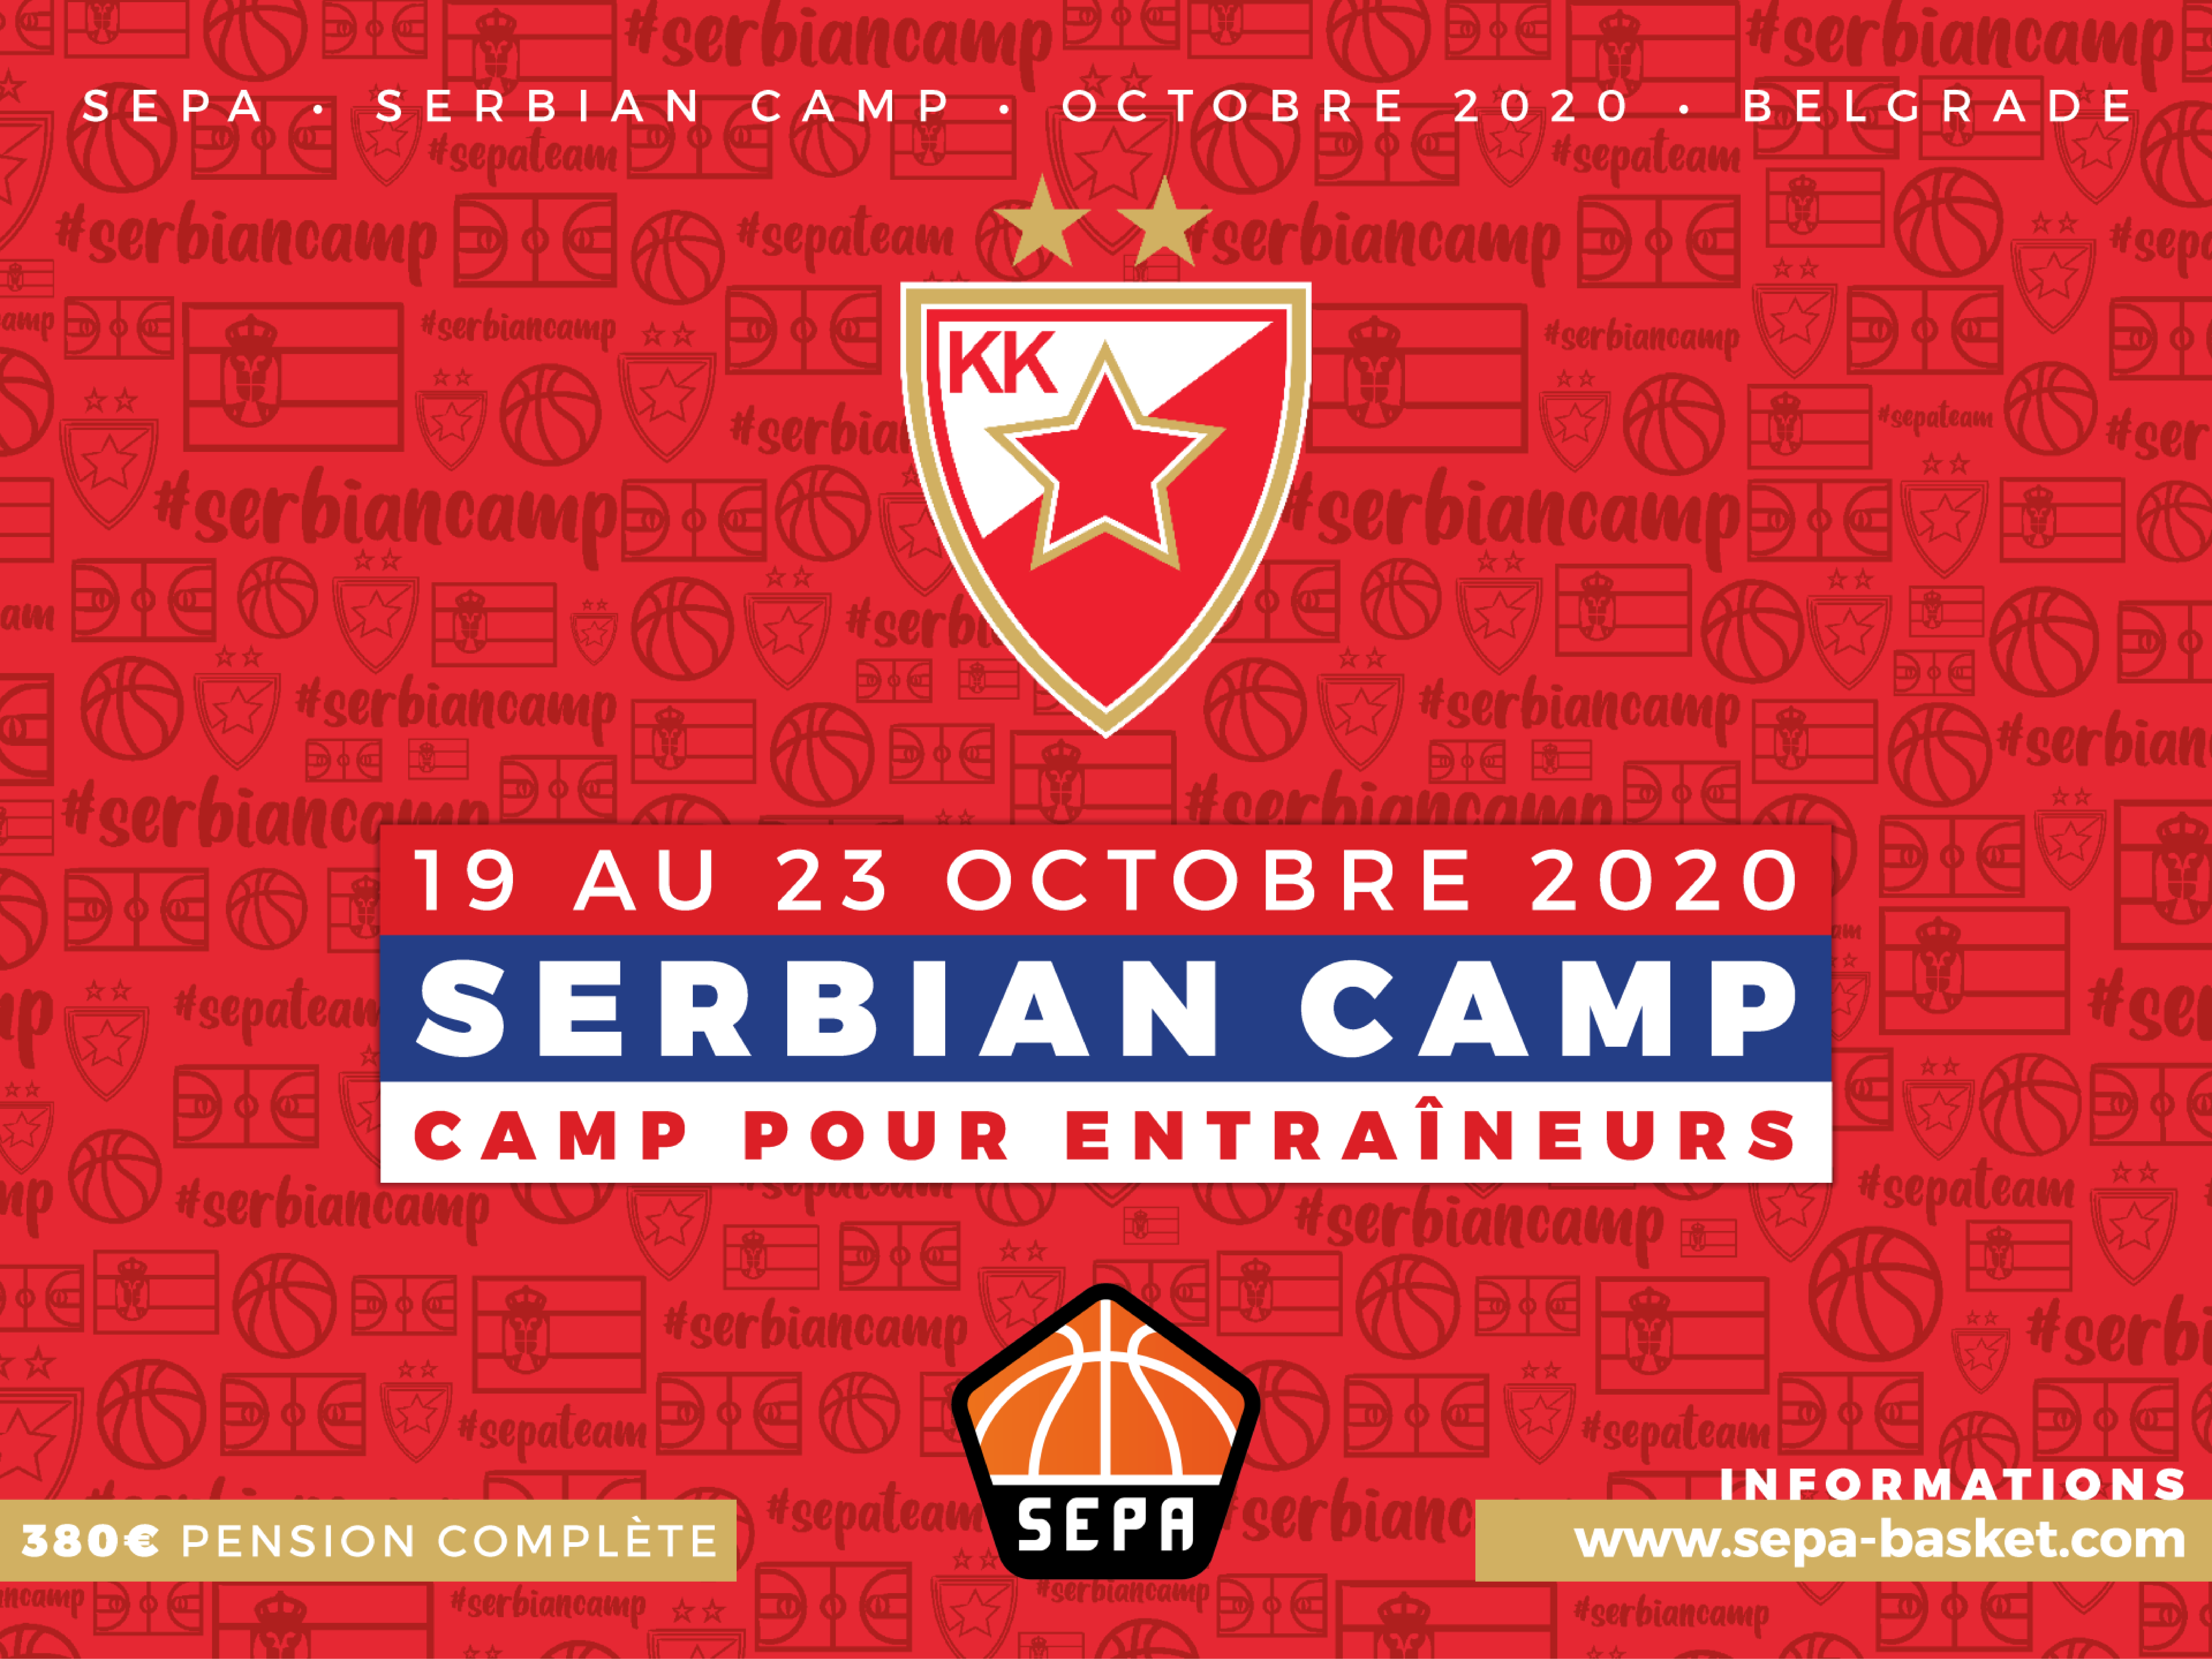 La SEPA organise un nouveau SERBIAN CAMP du 19 au 23 octobre prochain. Les inscriptions sont ouvertes !